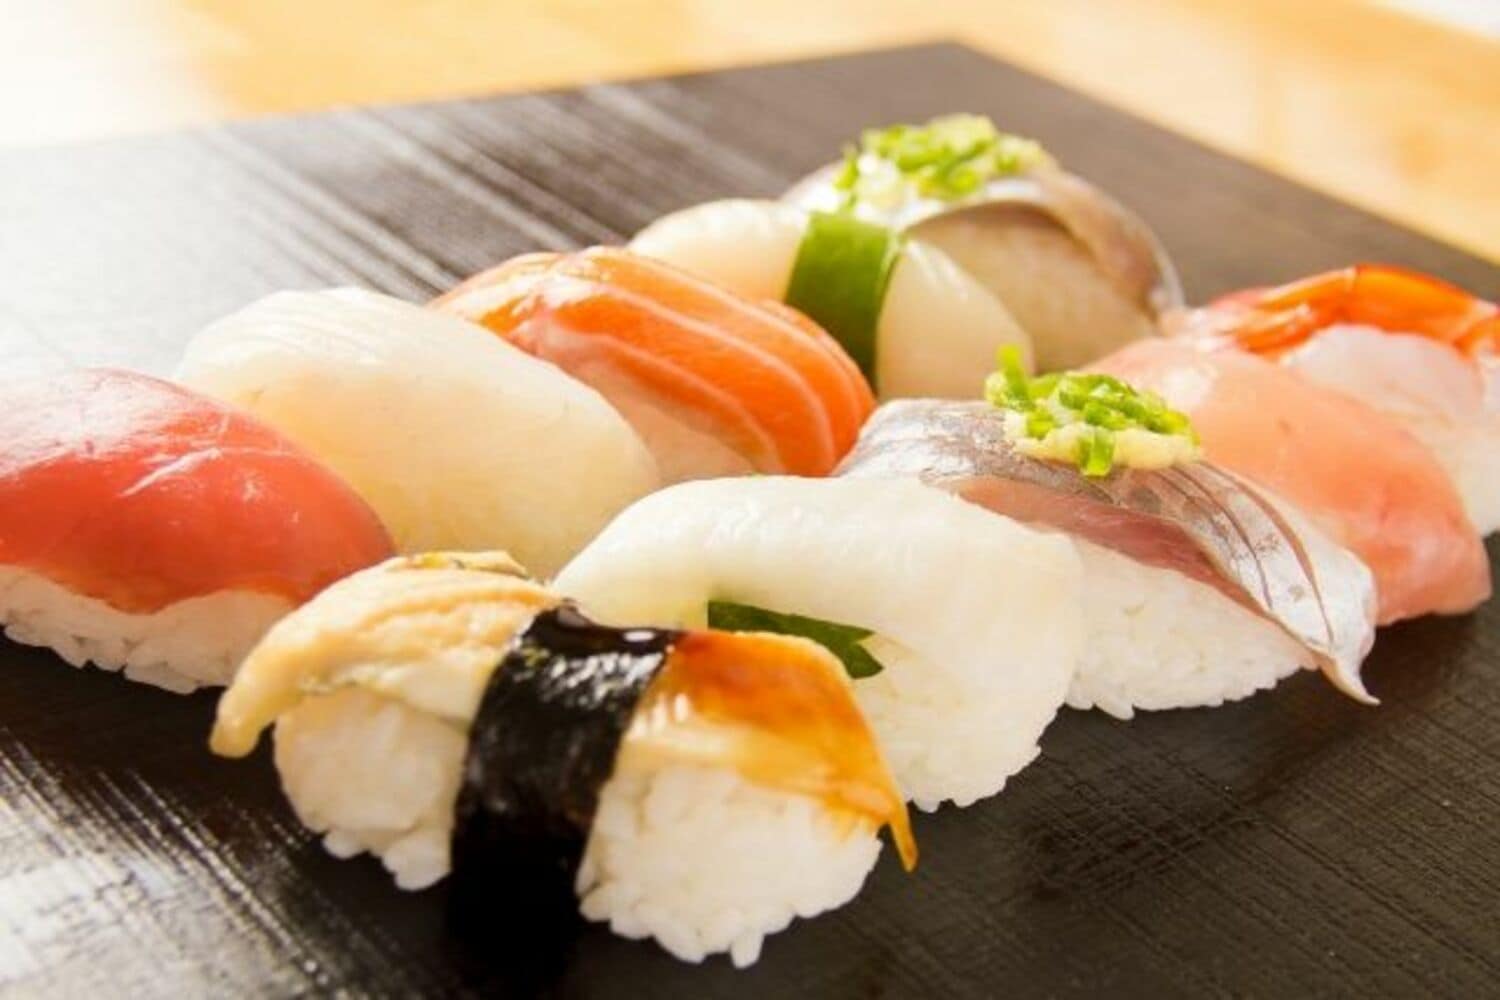 江原啓之「寿司に大盛りパスタ」極端な大食ぶりを、マネージャが指摘の画像